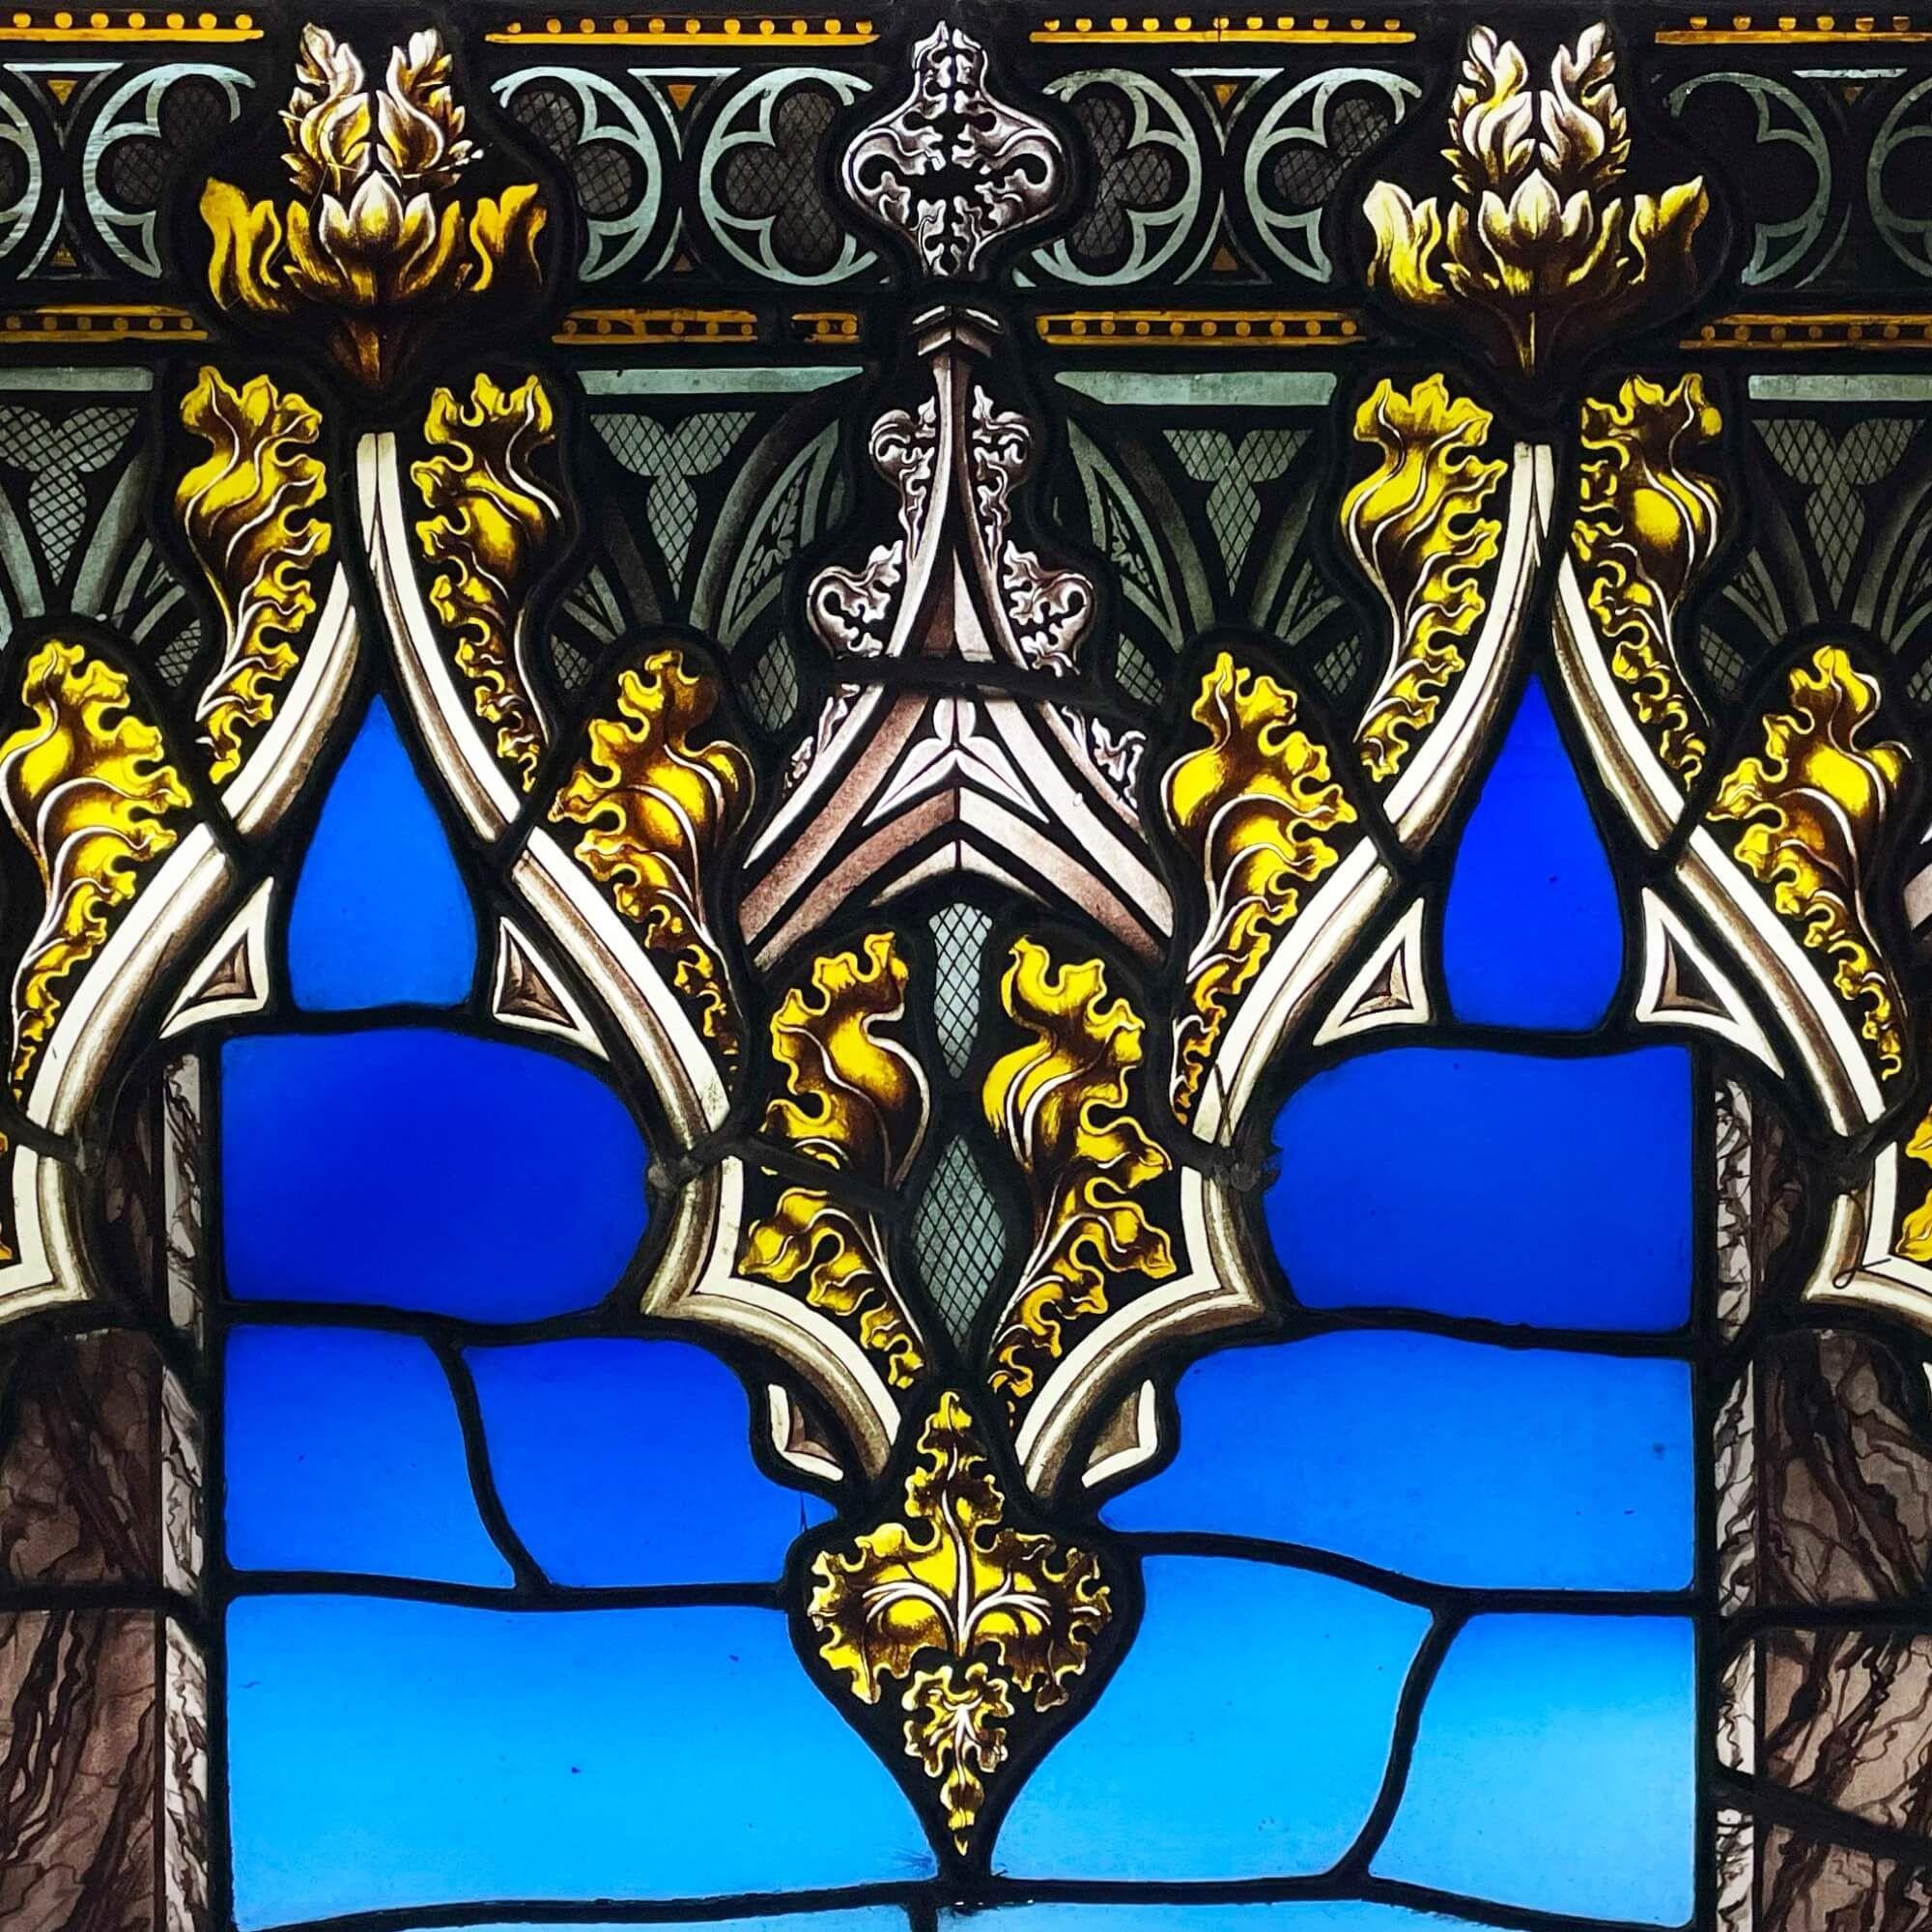 Panneau décoratif de vitrail anglais récupéré, retiré de l'église Holy Trinity, High Street, Wordsley, Stourbridge (construite en 1831) et réputé avoir été conservé depuis. Ce panneau, dont on pense qu'il faisait autrefois partie d'une fenêtre plus